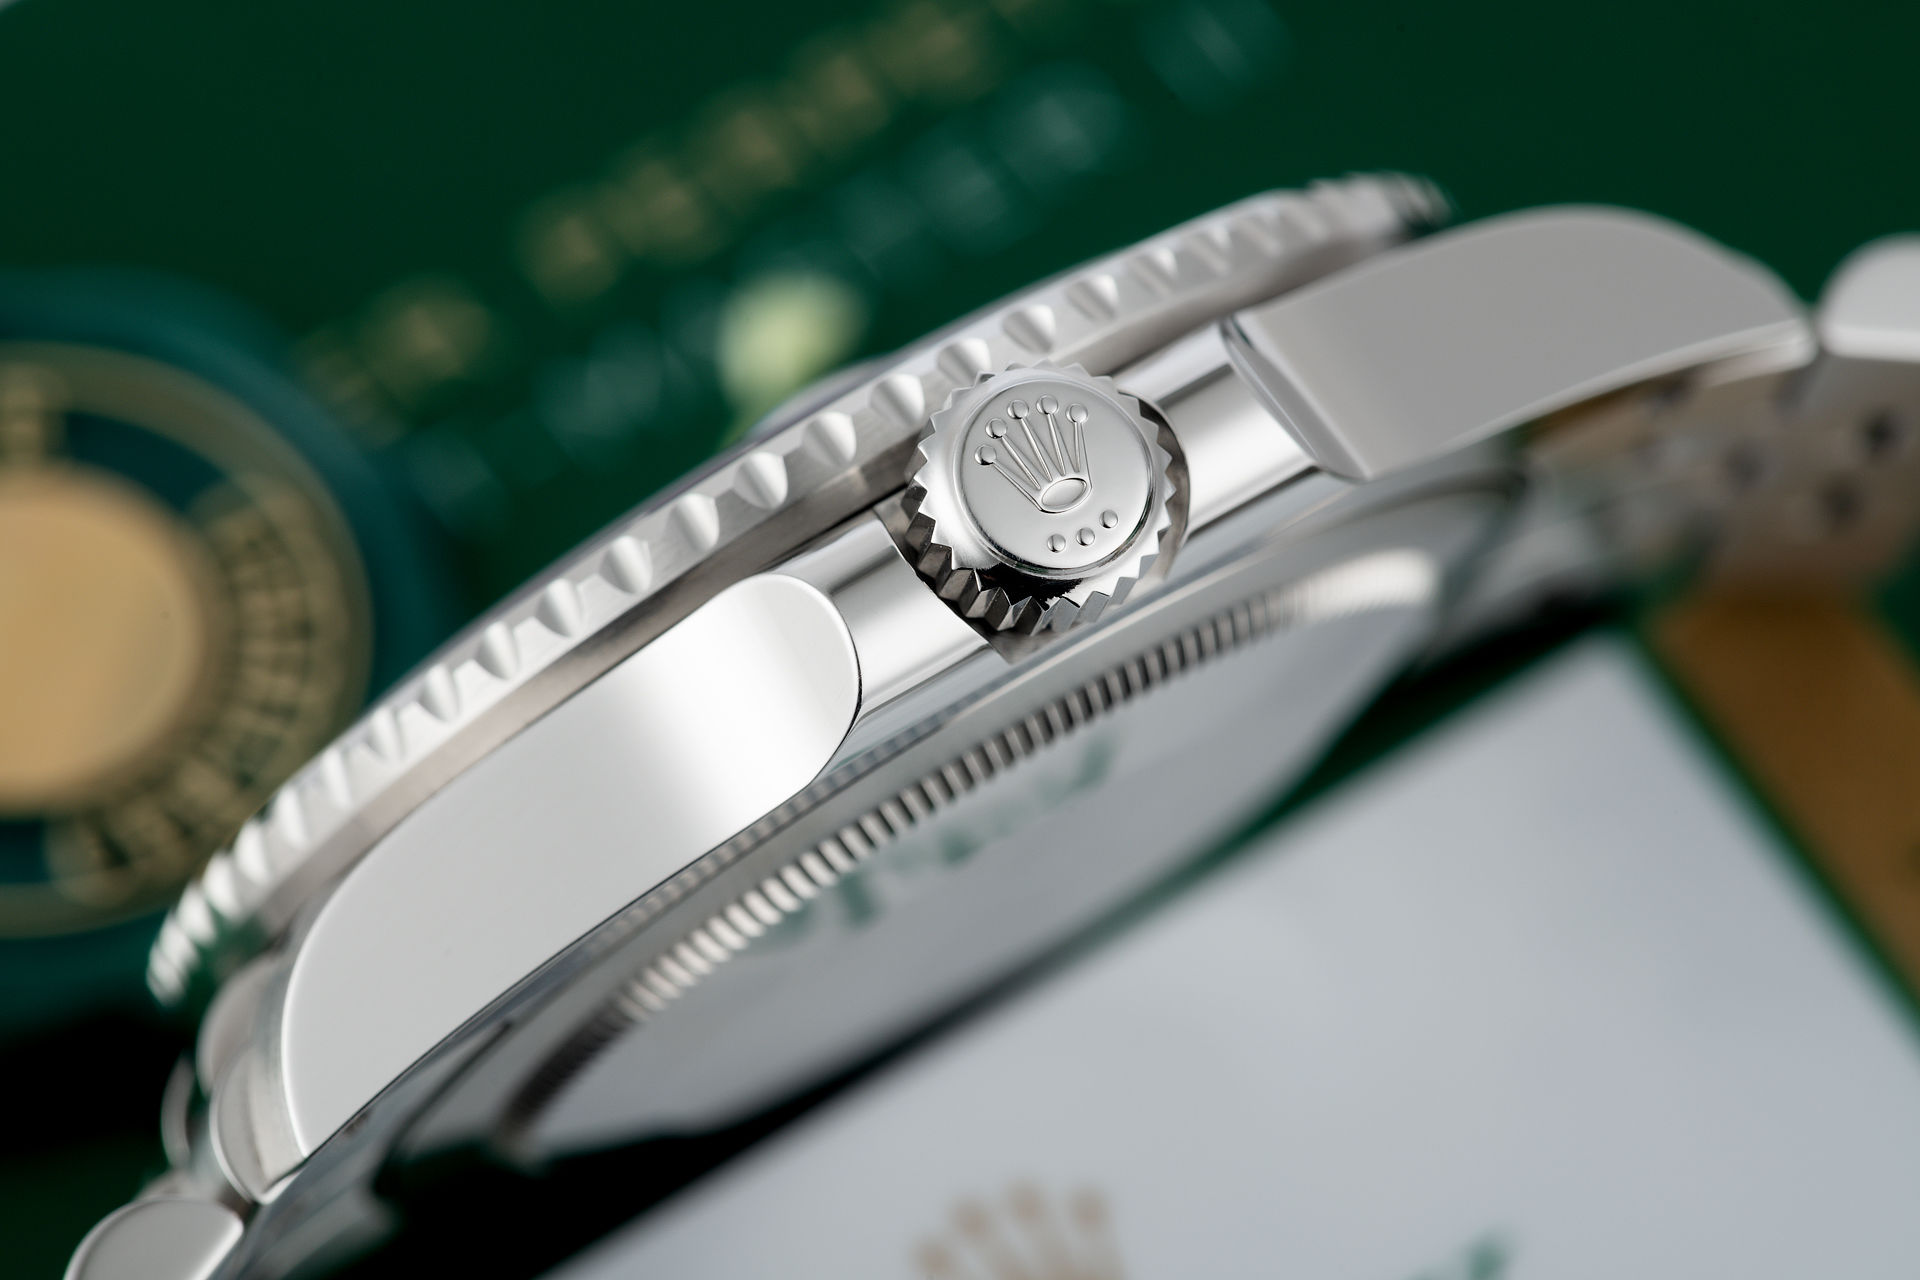 ref 126710BLRO | Brand New 5 Year Rolex Warranty | Rolex GMT-Master II